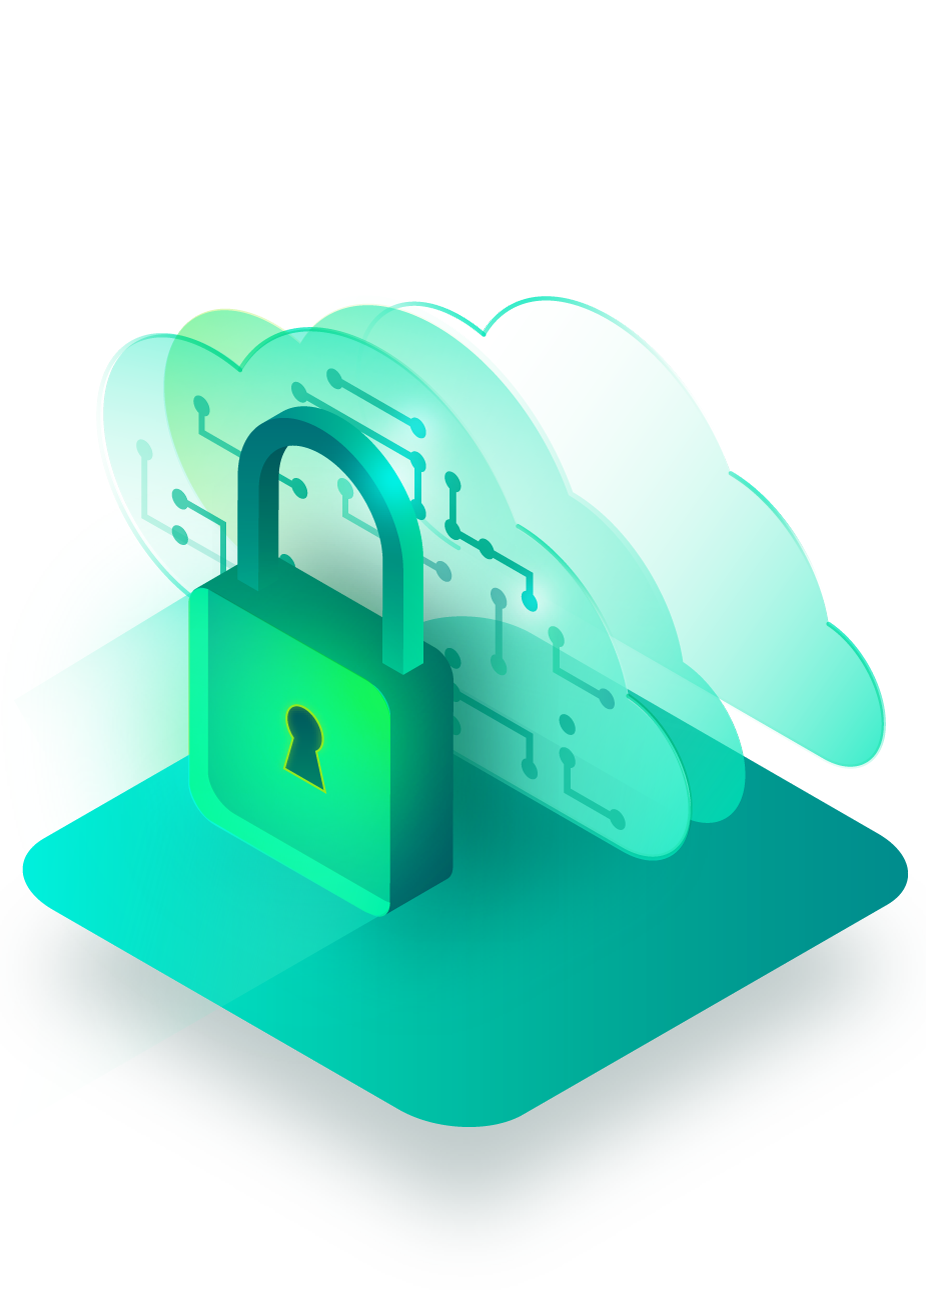 Public cloud data protection